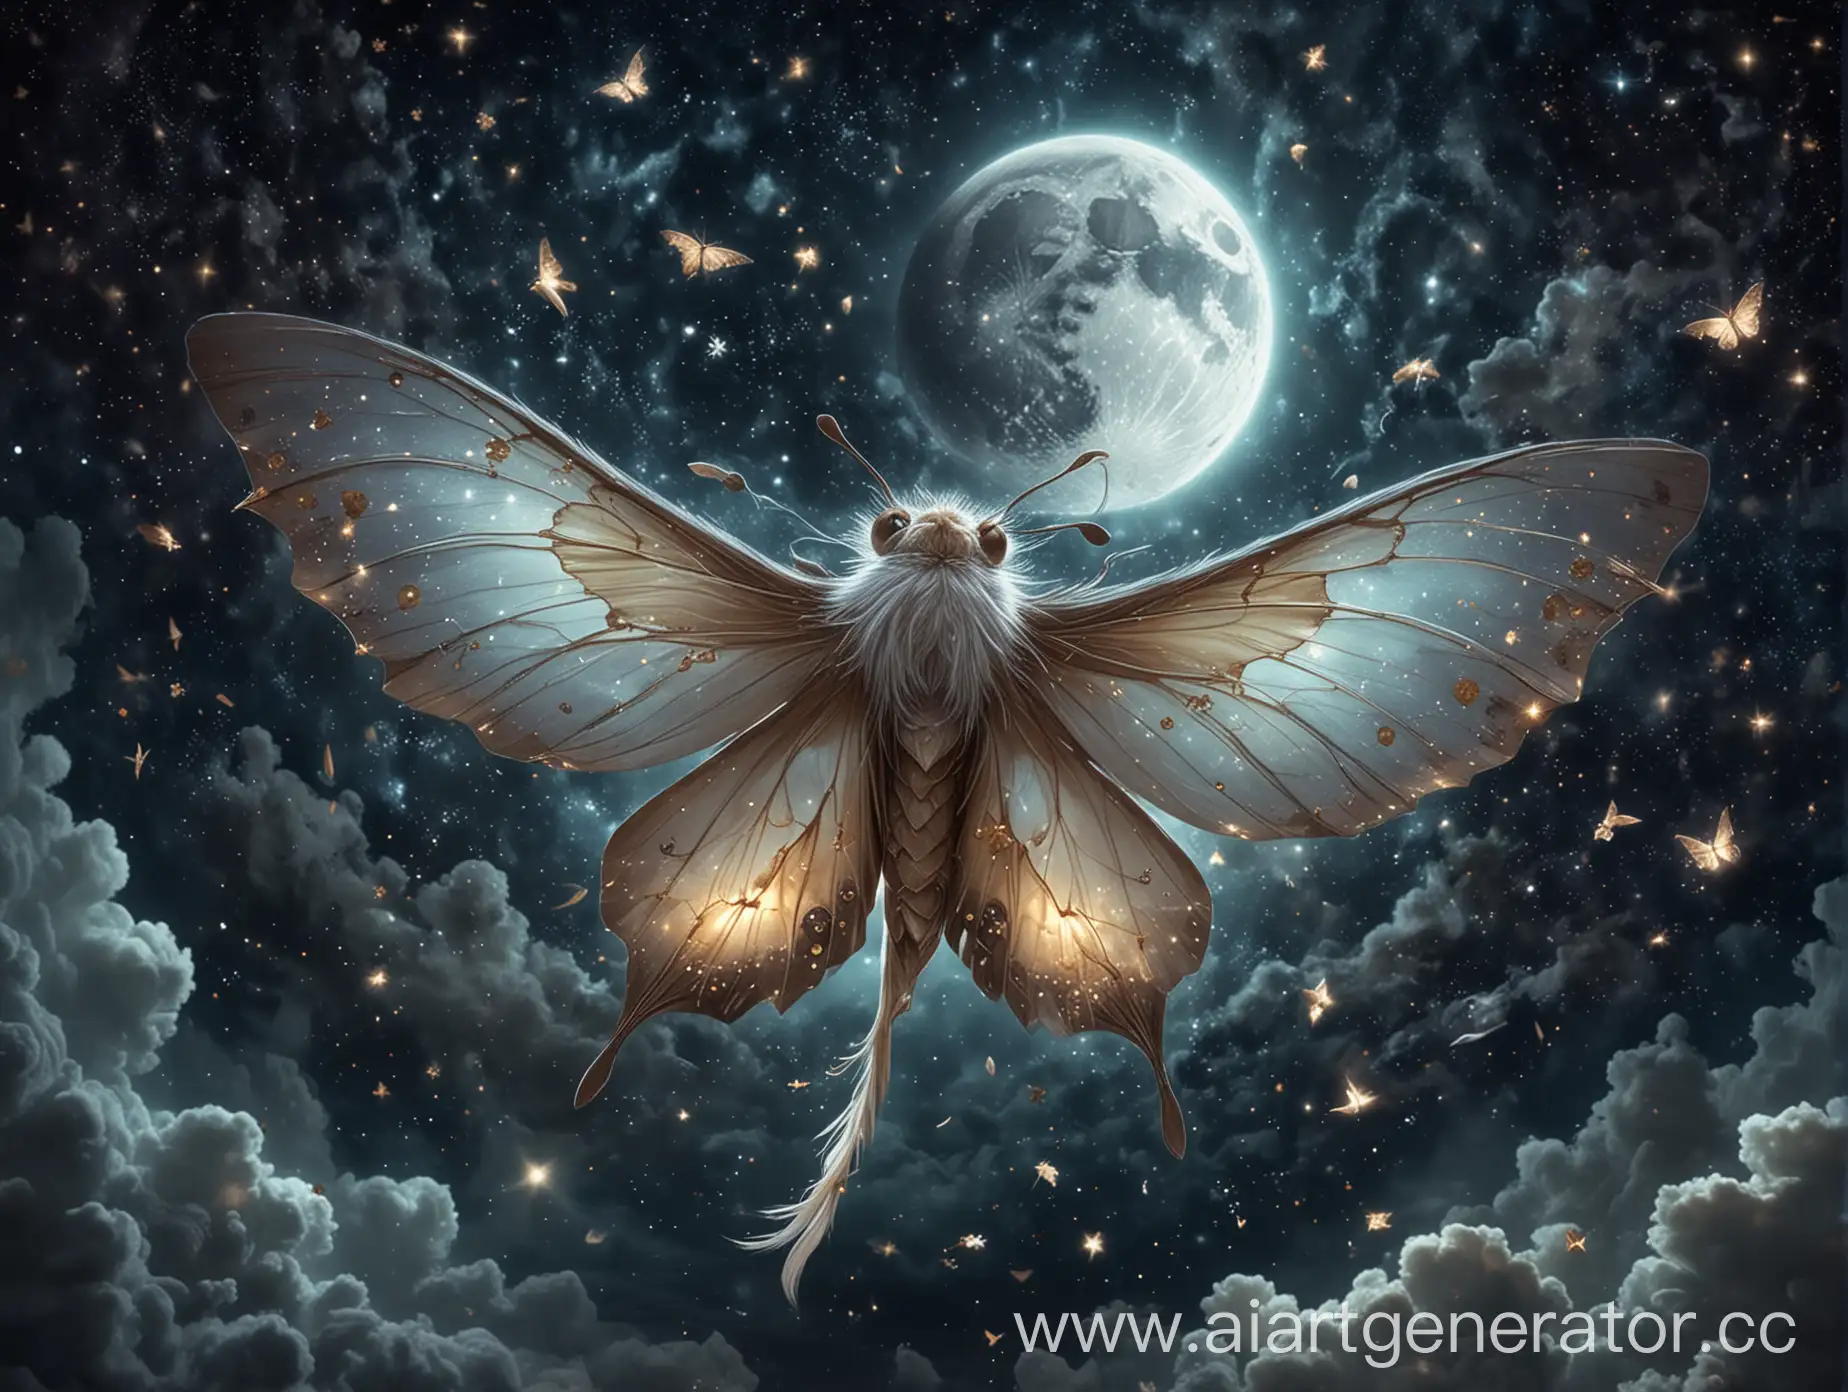 Создай изображение бабочки парящей в ночи среди звезд, бабочка должна отражать суть богини луны Элины из мира воров оф воркрафт